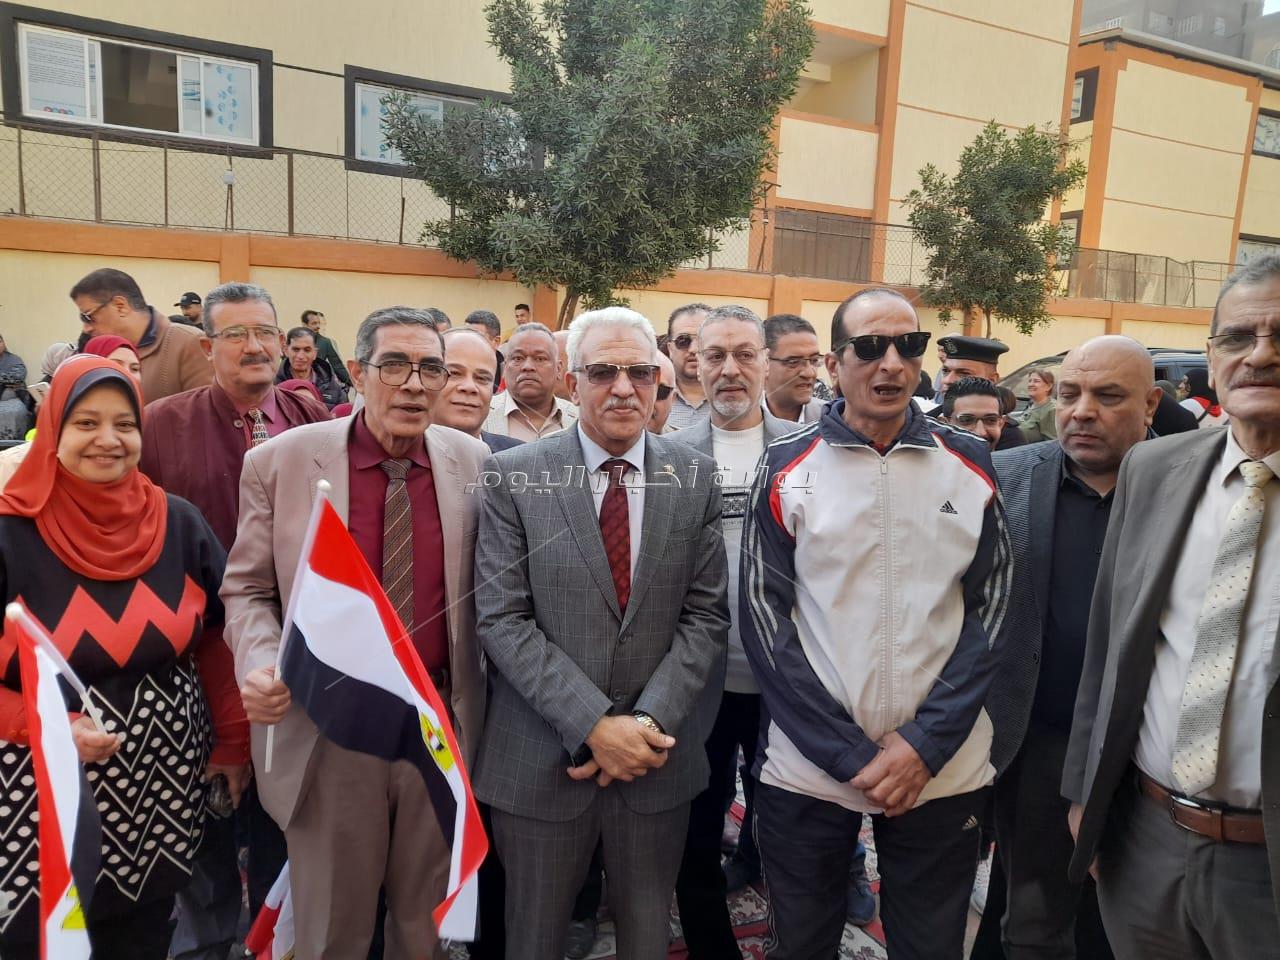 موسى: أن الإقبال الشديد على التصويت يكشف وحدة المصريين وحرصهم على صالح الوطن